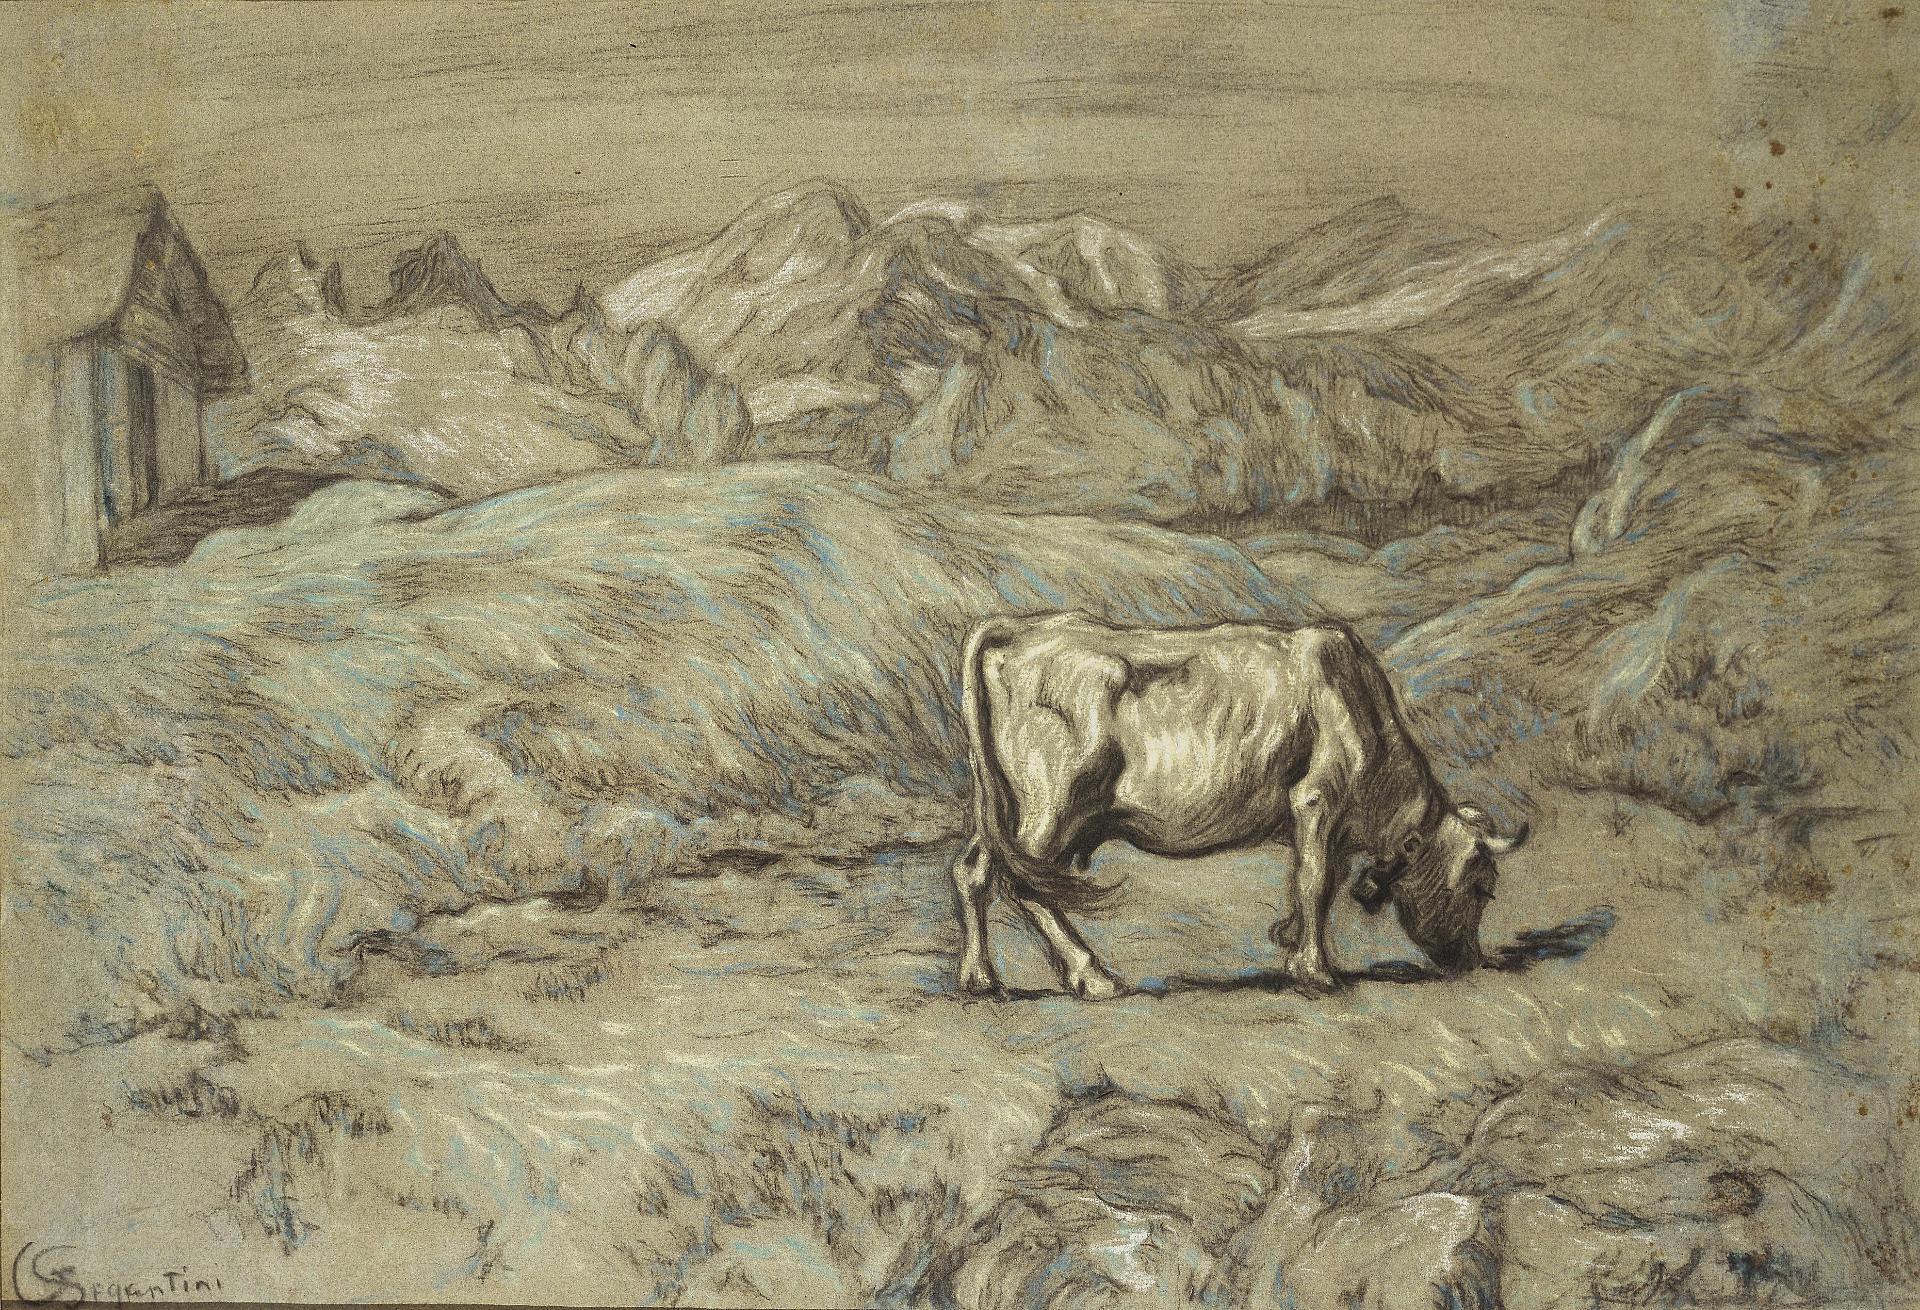 Джованни Сегантини. "Альпийское пастбище (Пейзаж с коровой)". Около 1896.